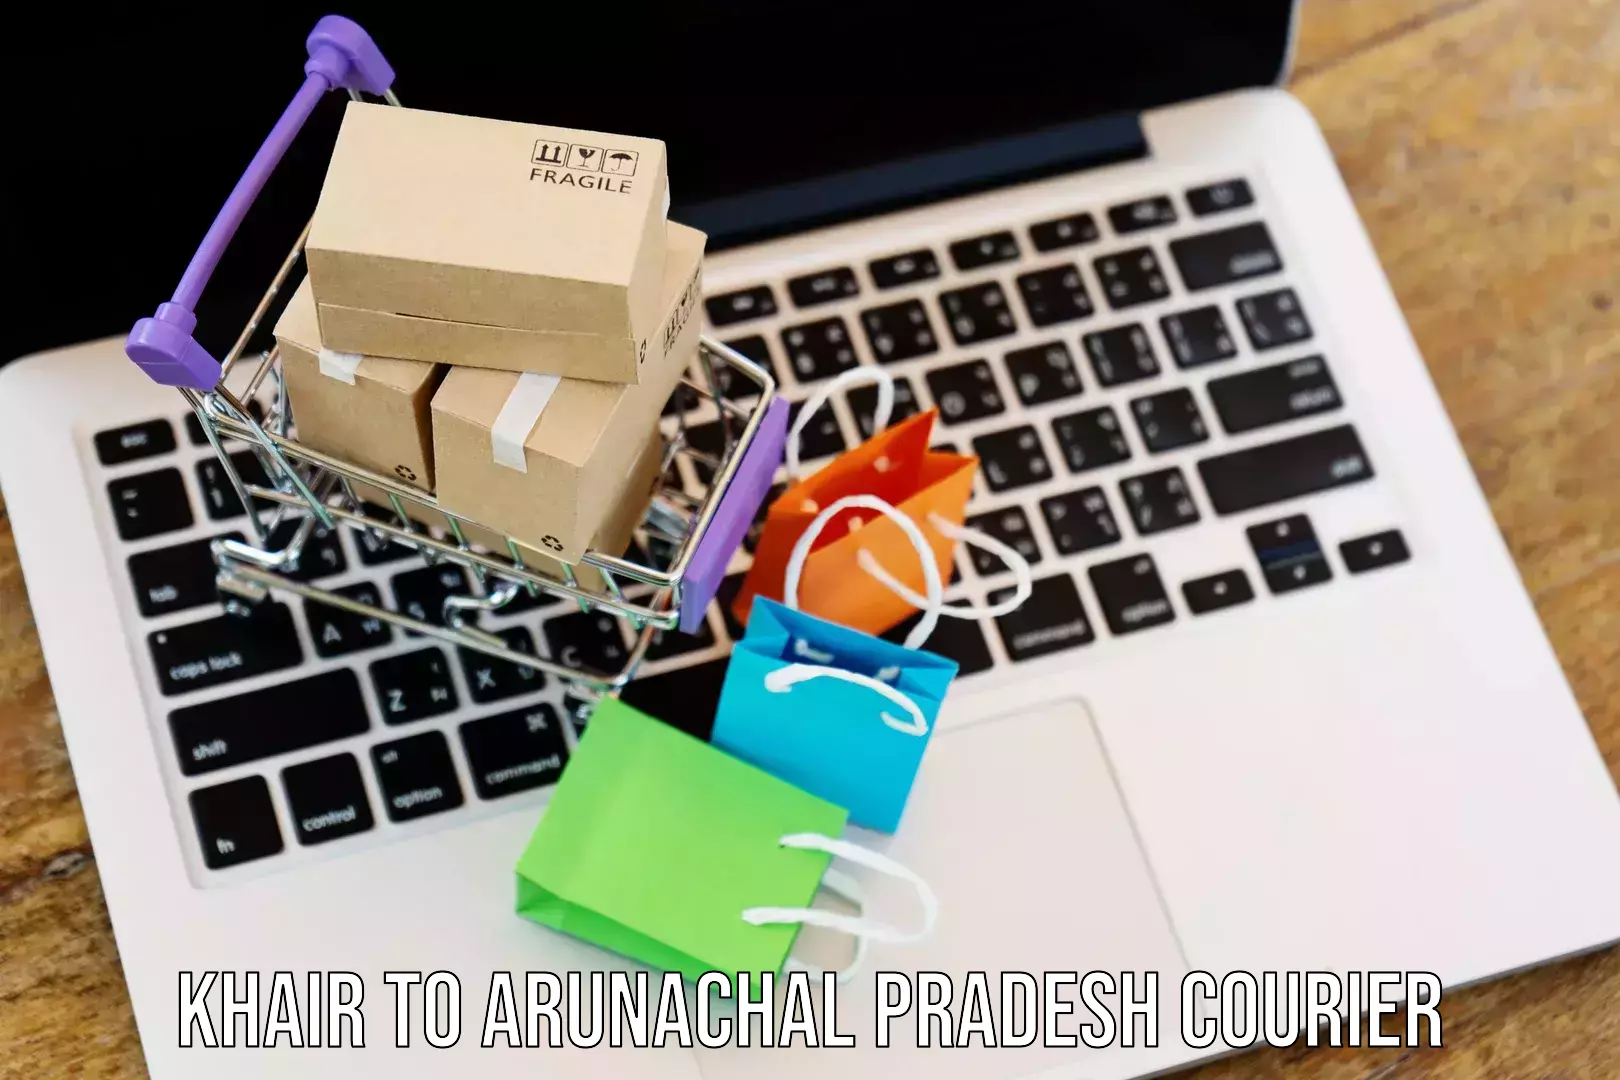 Pharmaceutical courier Khair to Arunachal Pradesh